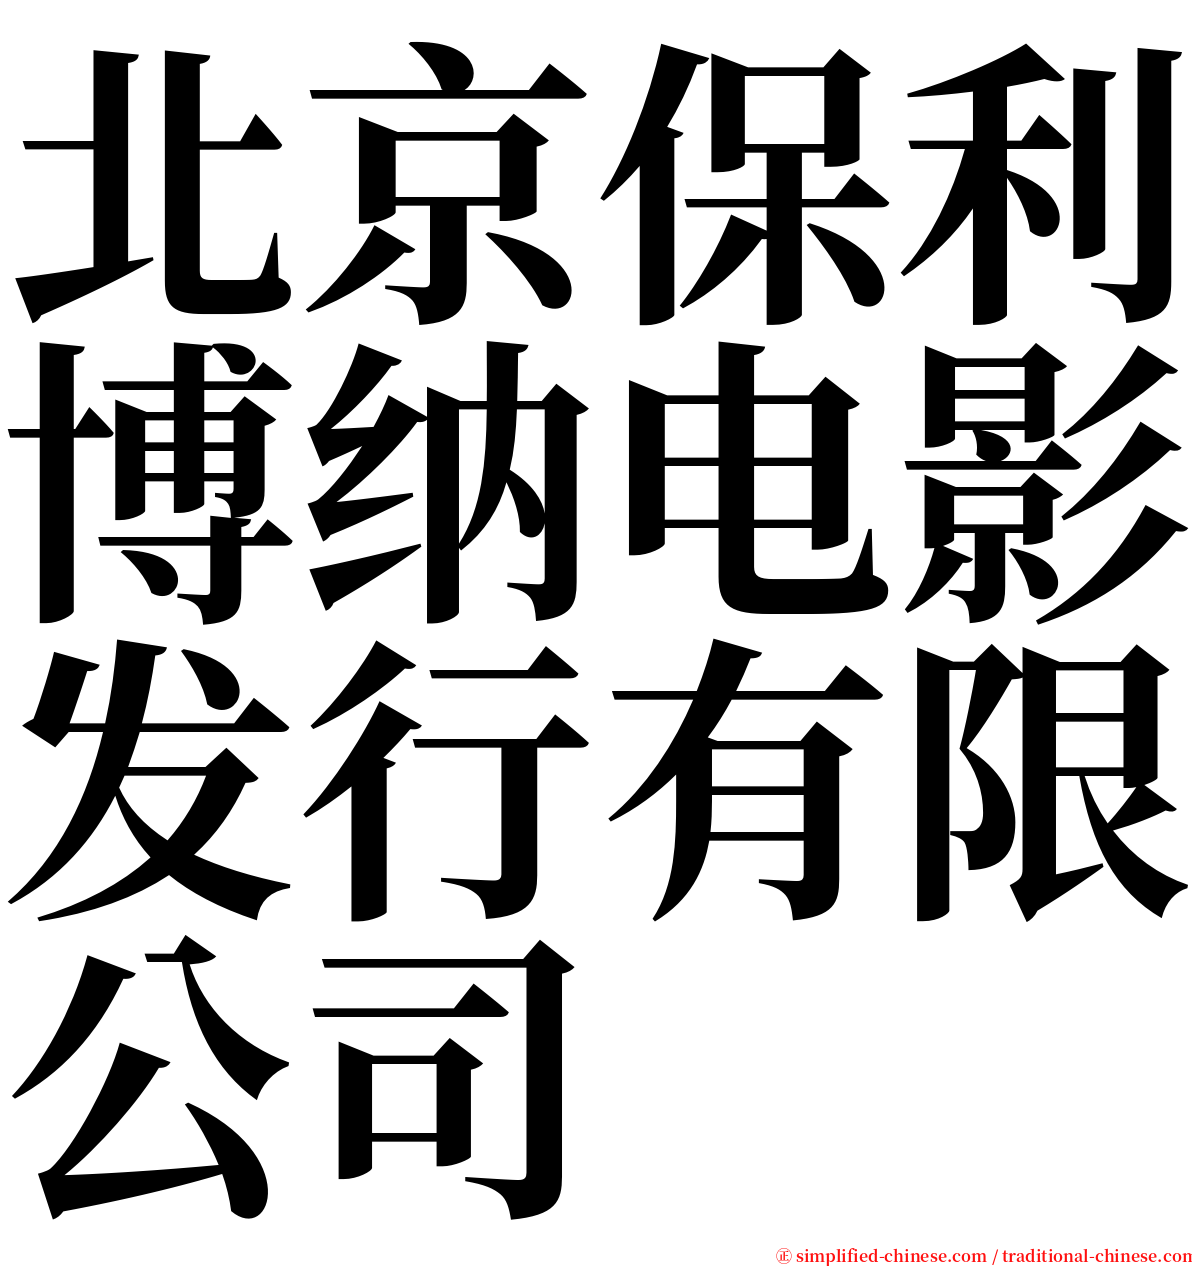 北京保利博纳电影发行有限公司 serif font